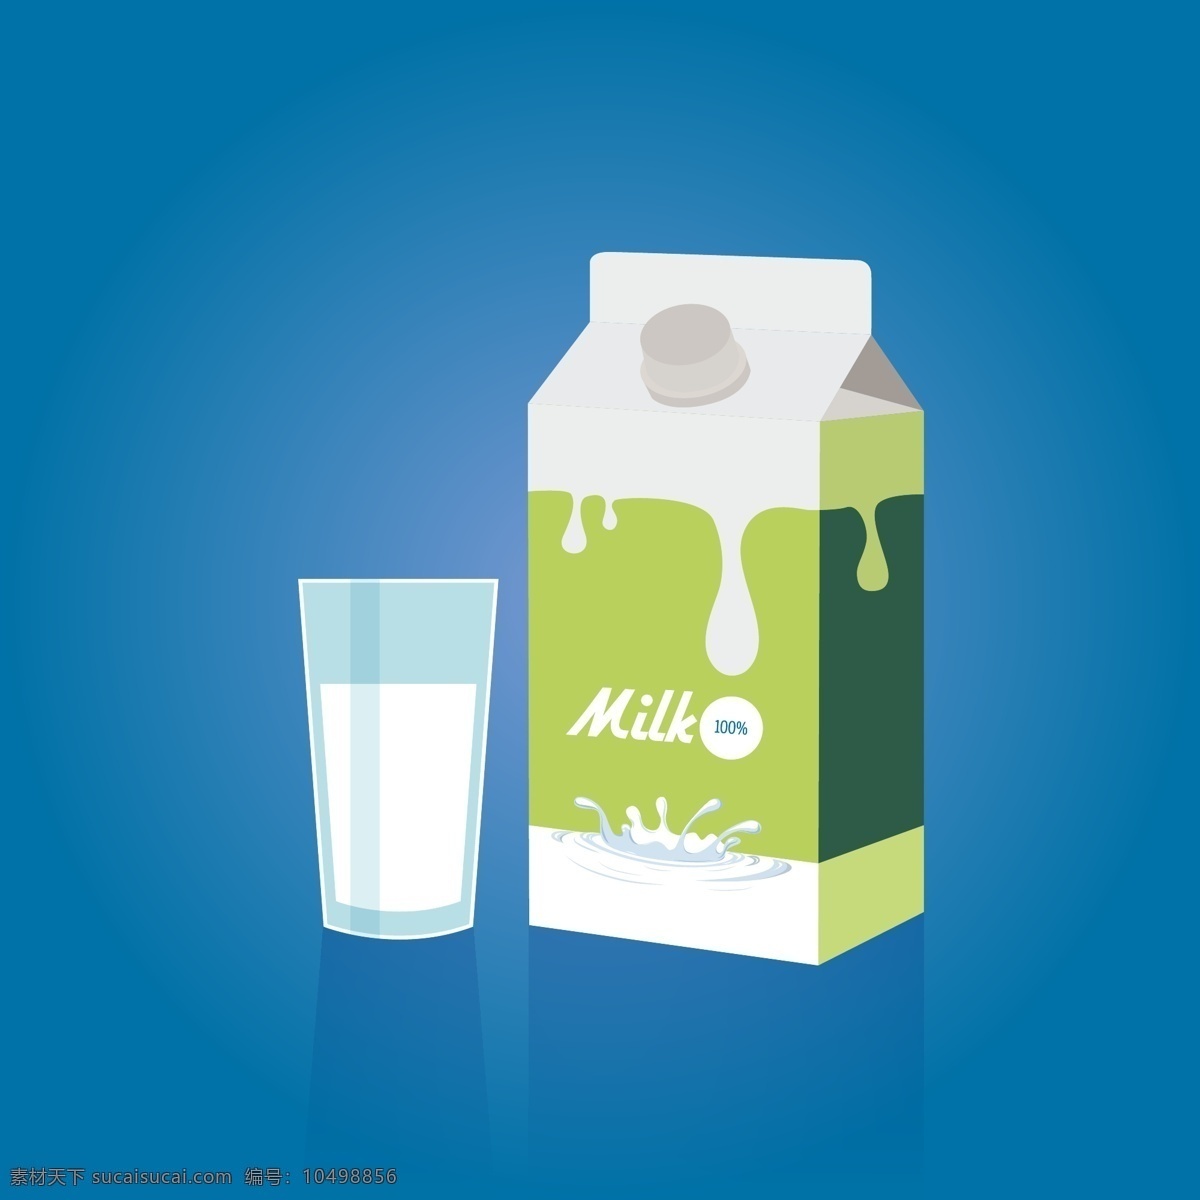 牛奶和牛奶盒 牛奶盒 牛奶 杯子 包装 矢量包装